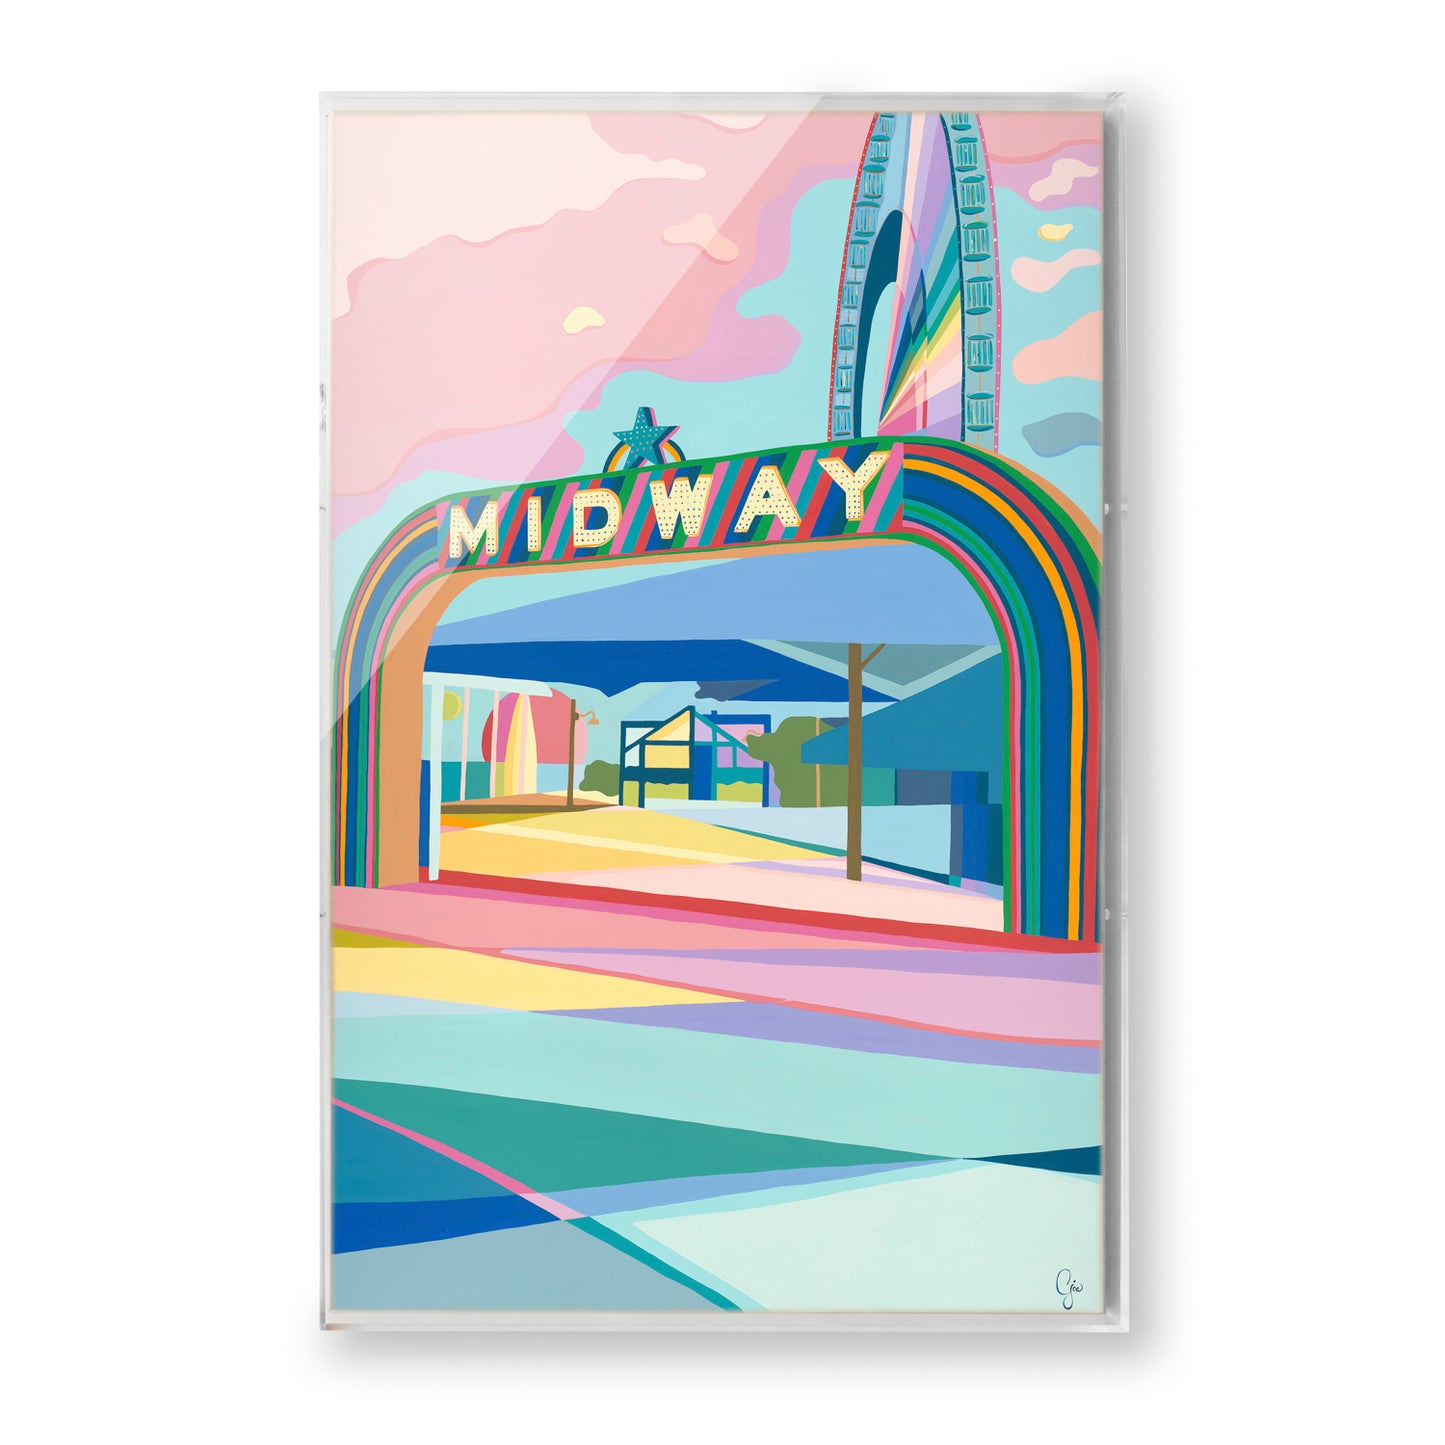 Midway by Carolyn Joe